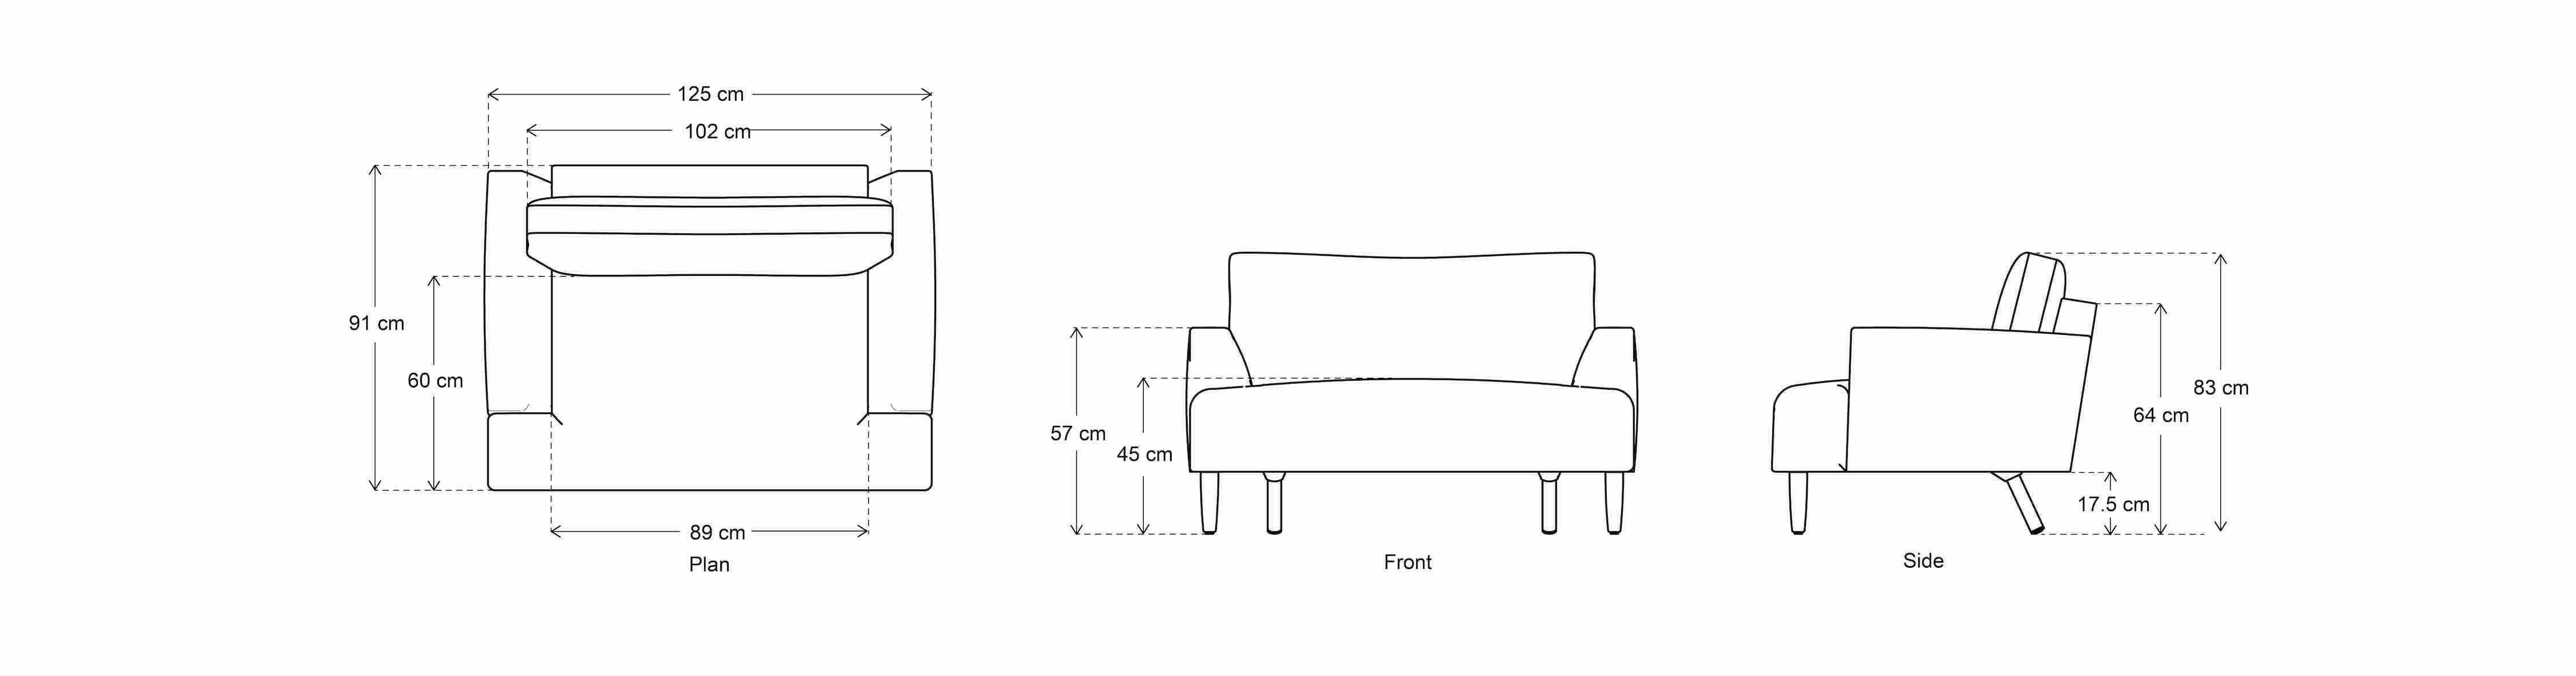 Chaise longue sofa dimensions